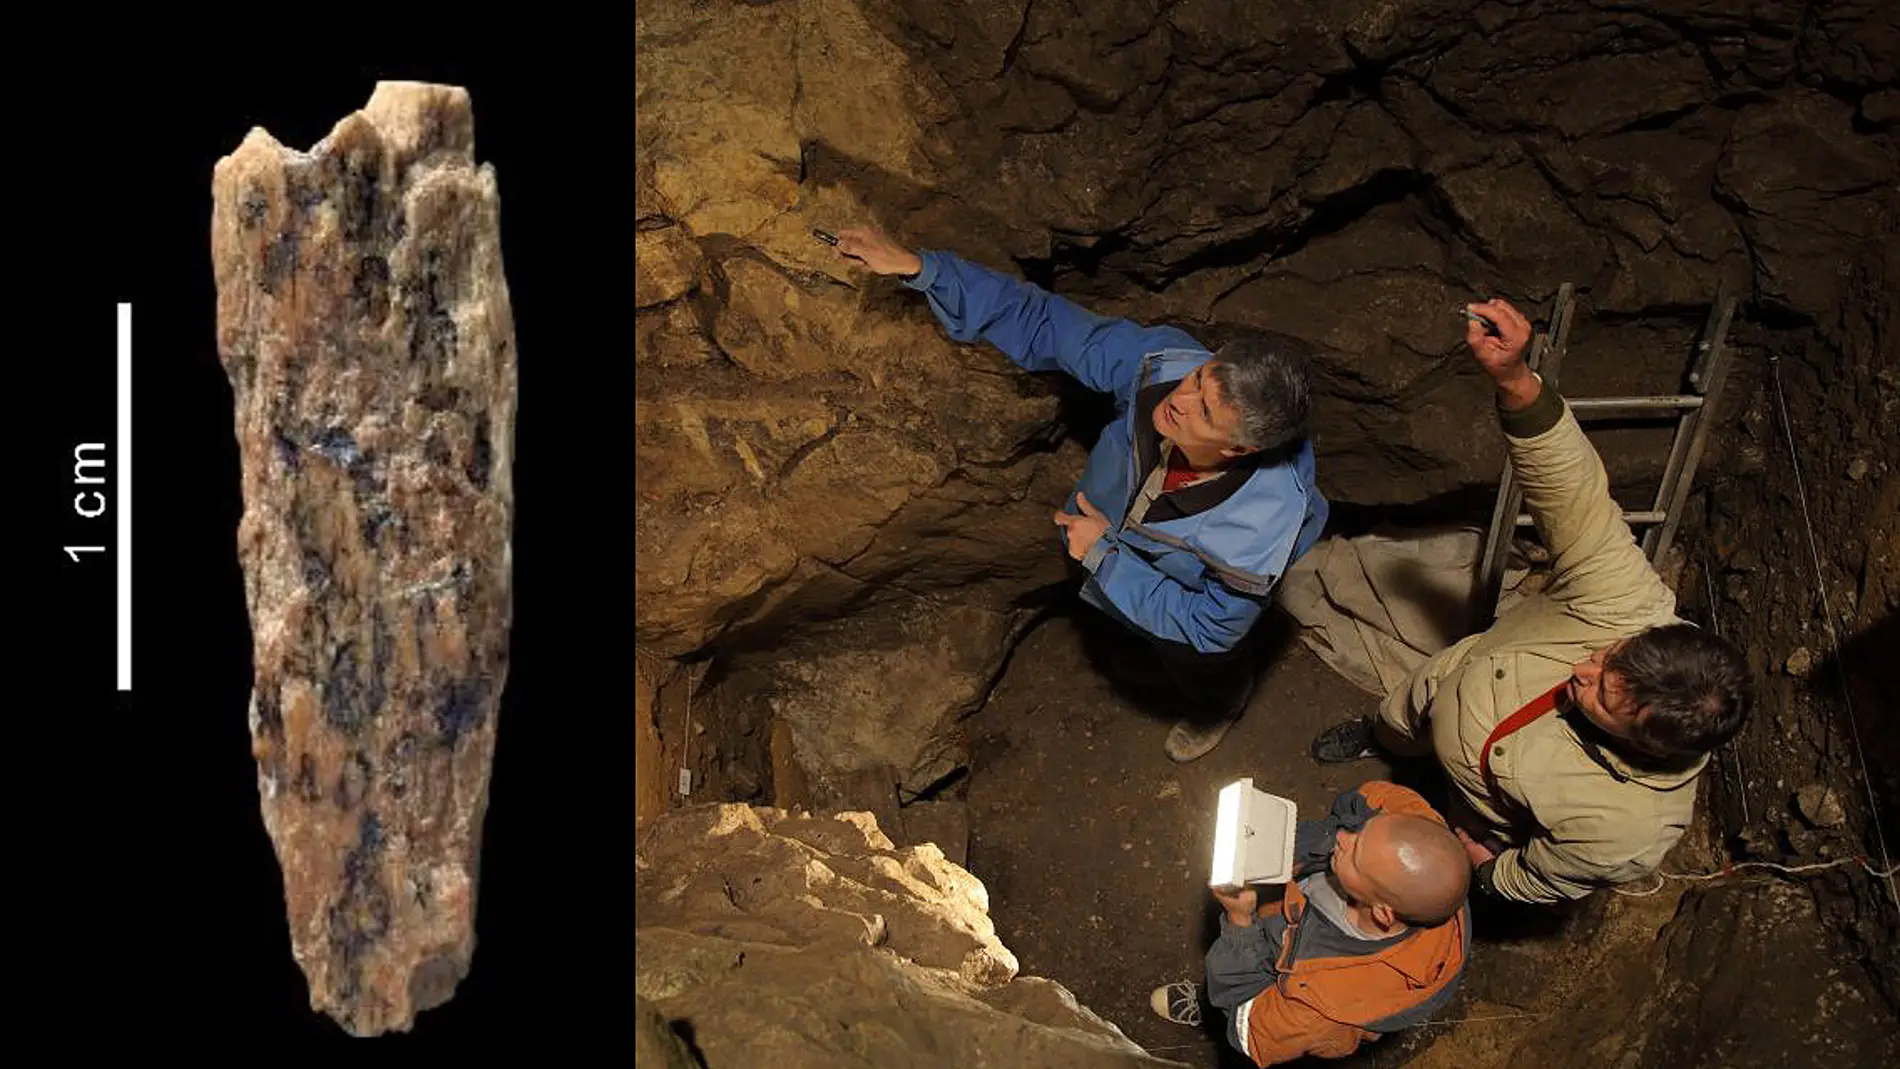 Descubiertos los restos de una hija de neandertal y denisovano